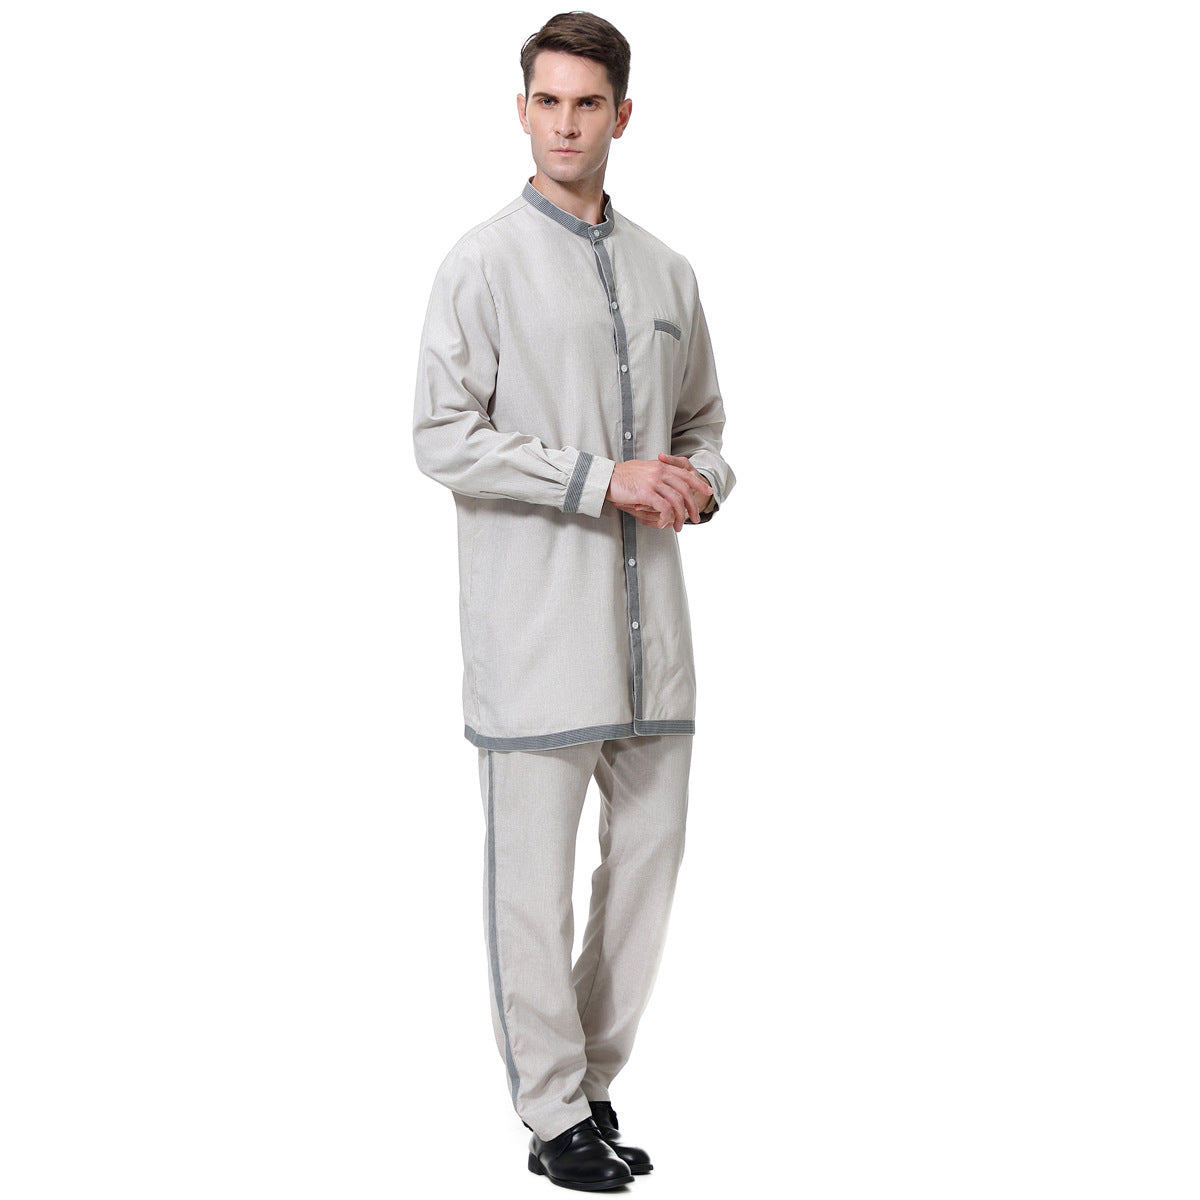 Muslim Men's Robe Suit Angelwarriorfitness.com